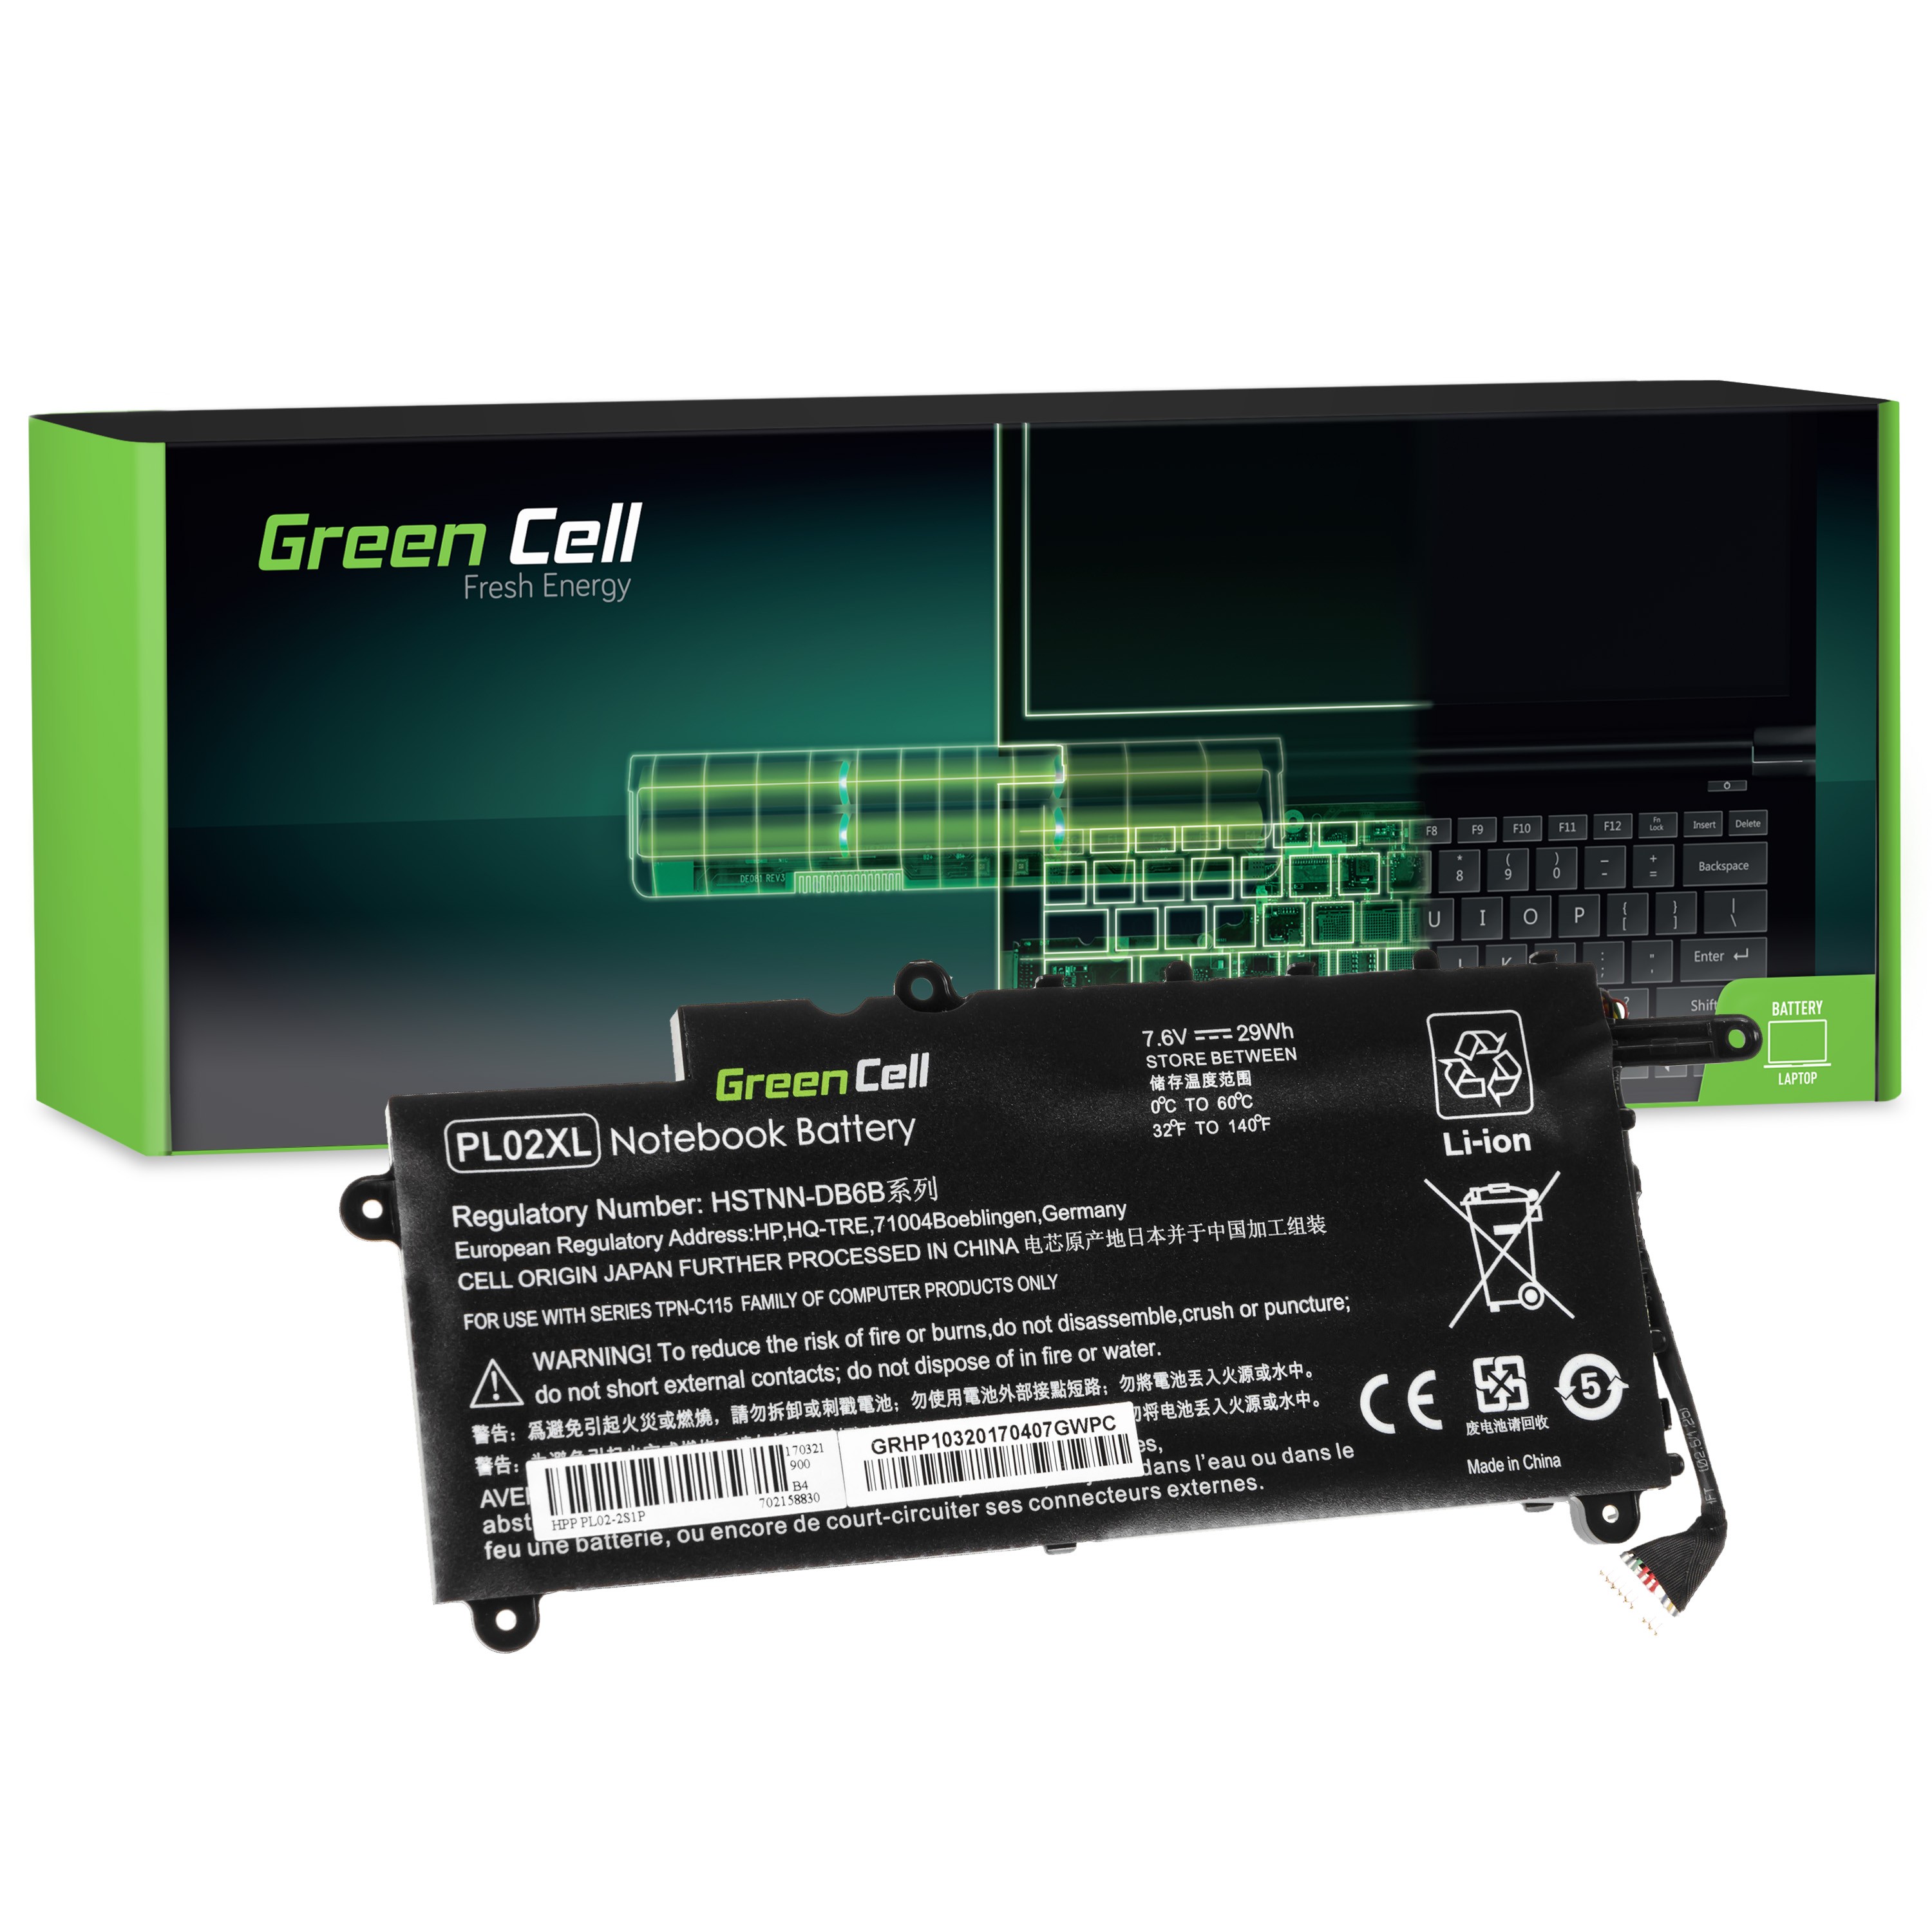 Green Cell laptopbatteri til HP Pavilion x360 11-N HP x360 310 G1